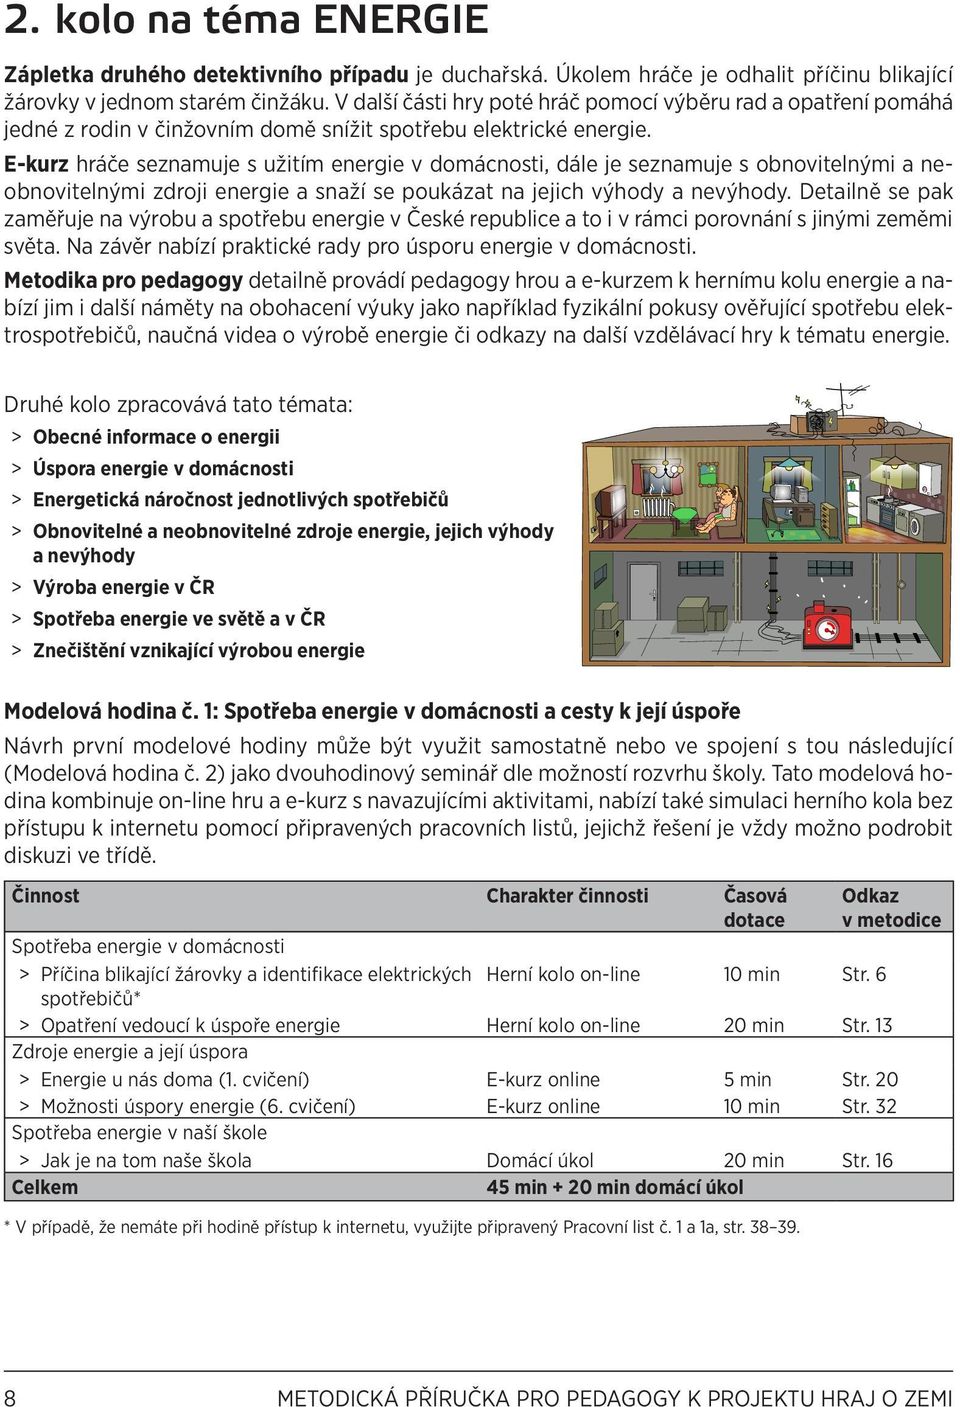 E-kurz hráče seznamuje s užitím energie v domácnosti, dále je seznamuje s obnovitelnými a neobnovitelnými zdroji energie a snaží se poukázat na jejich výhody a nevýhody.